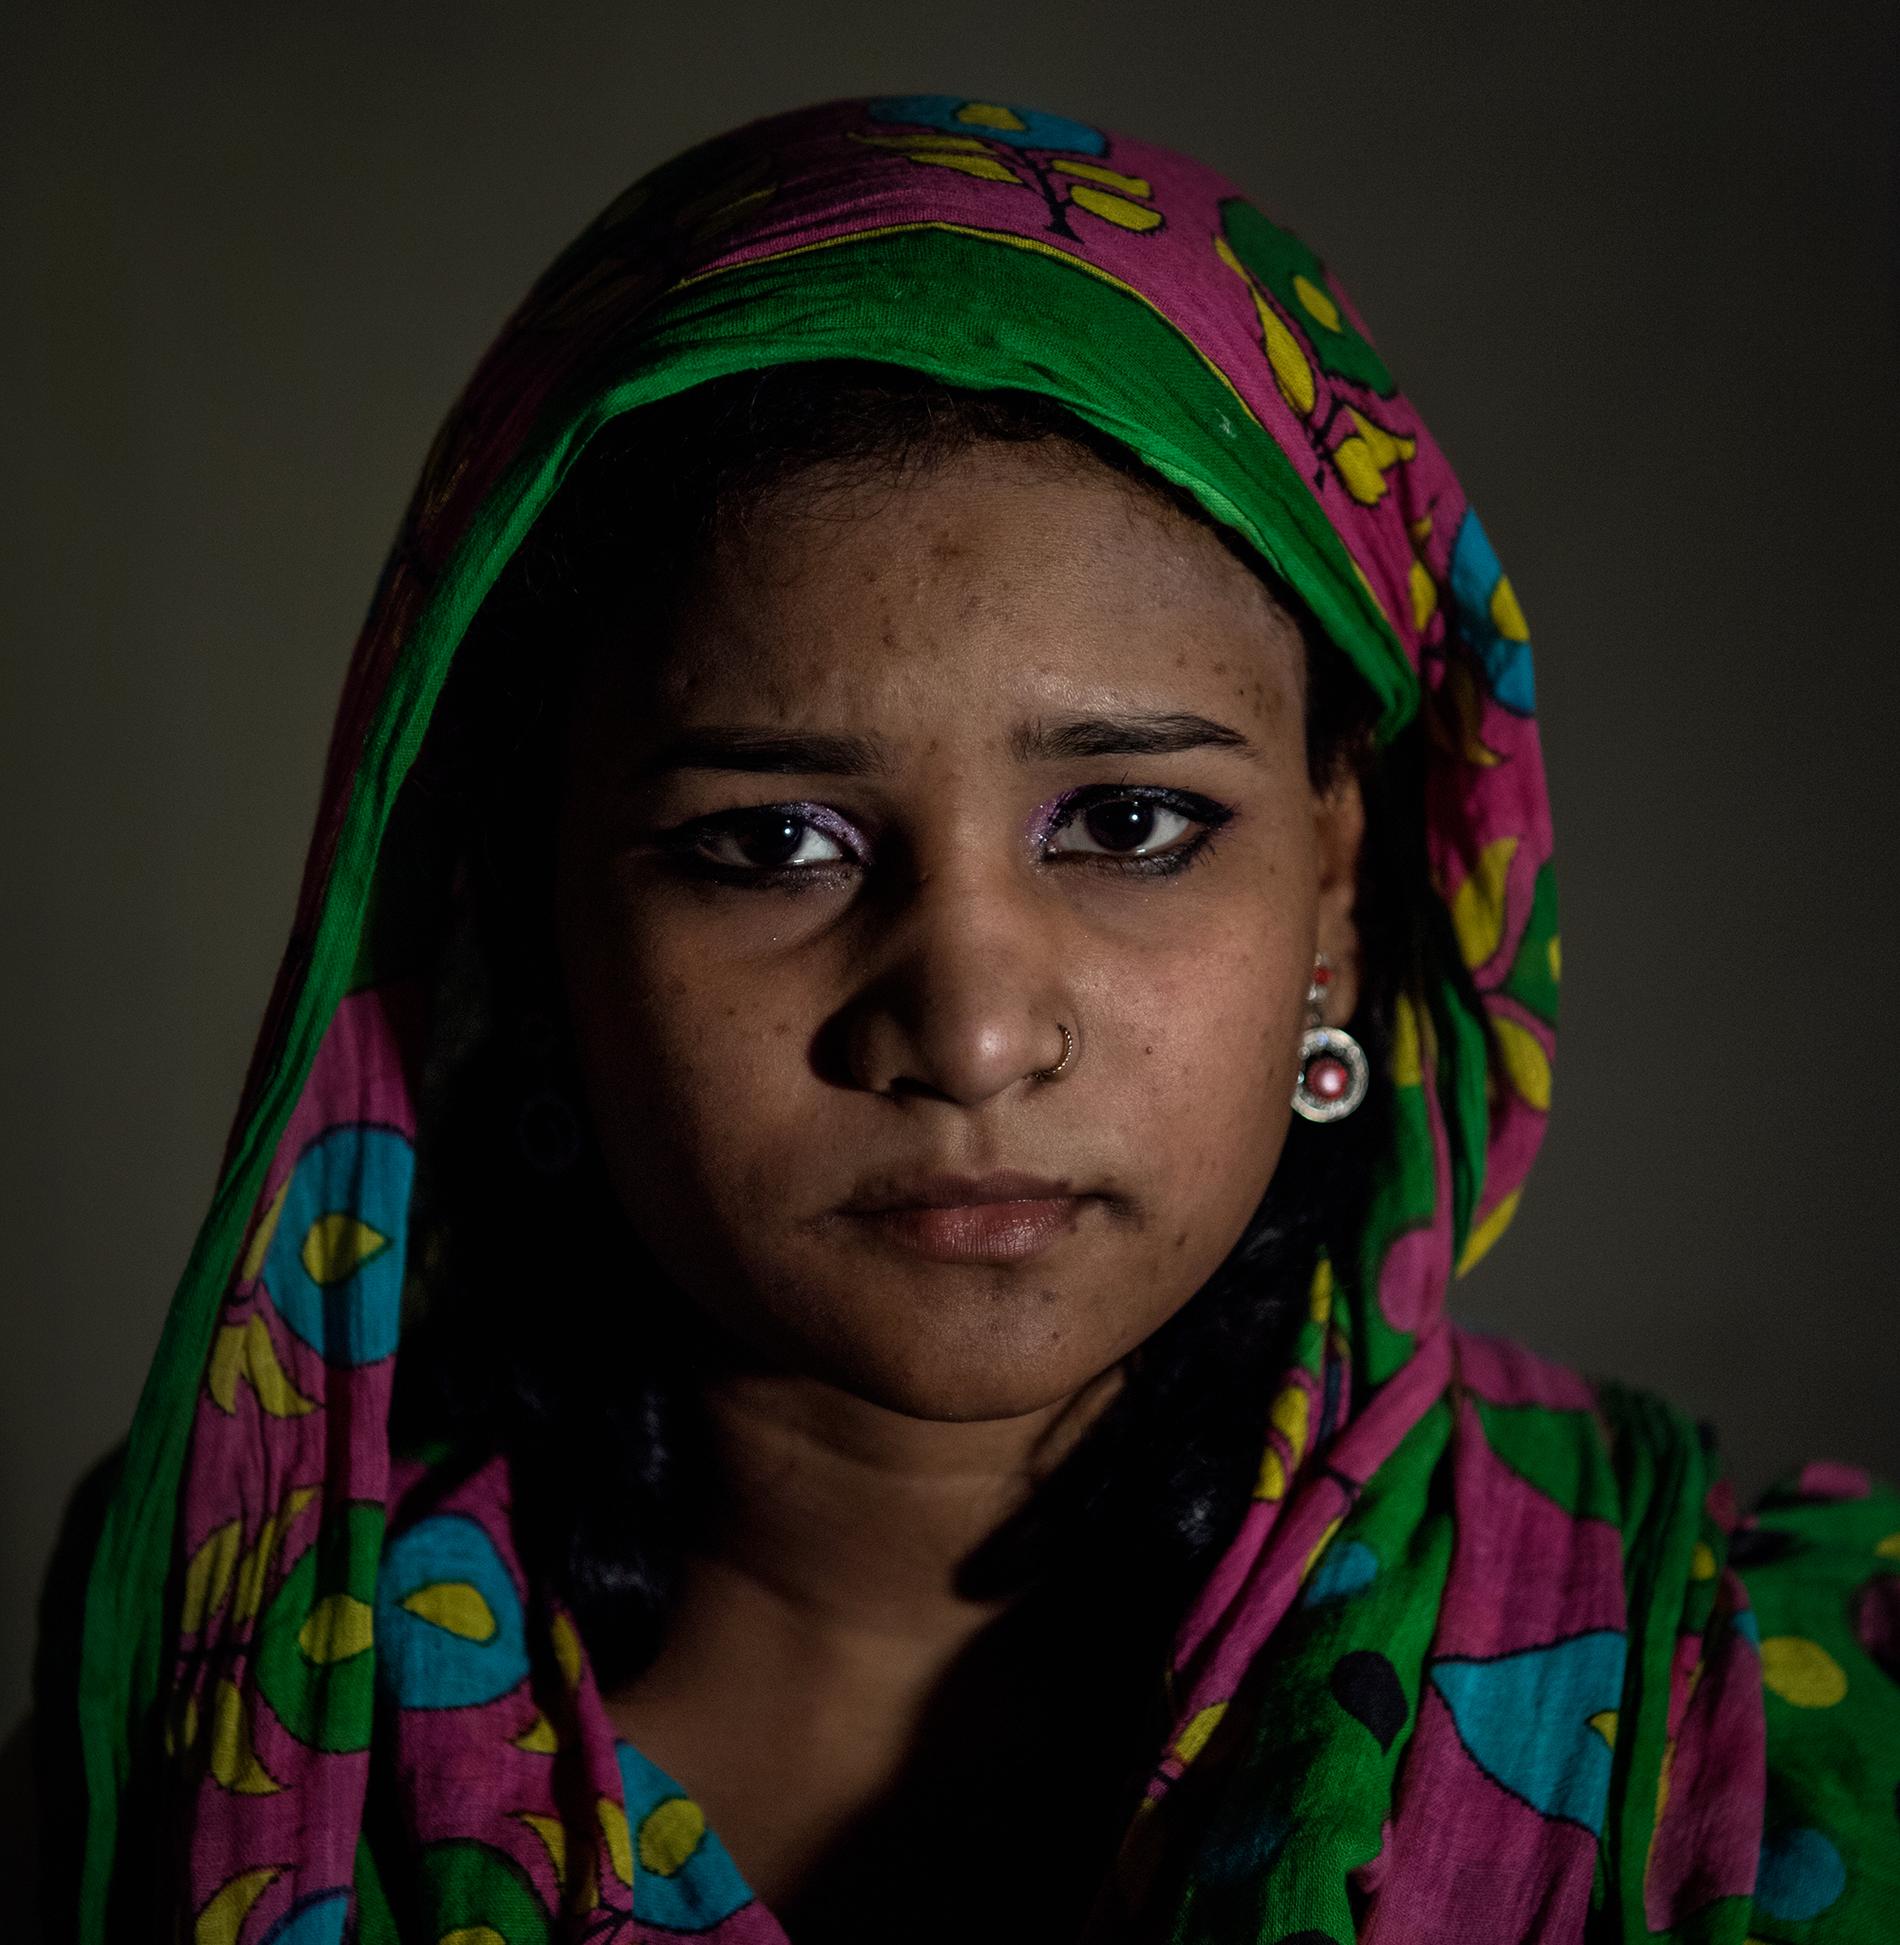 ”Jag trodde aldrig att jag skulle jobba som prostituerad” berättar 15-åriga Deeksha efter att hon rädats från en bordell.